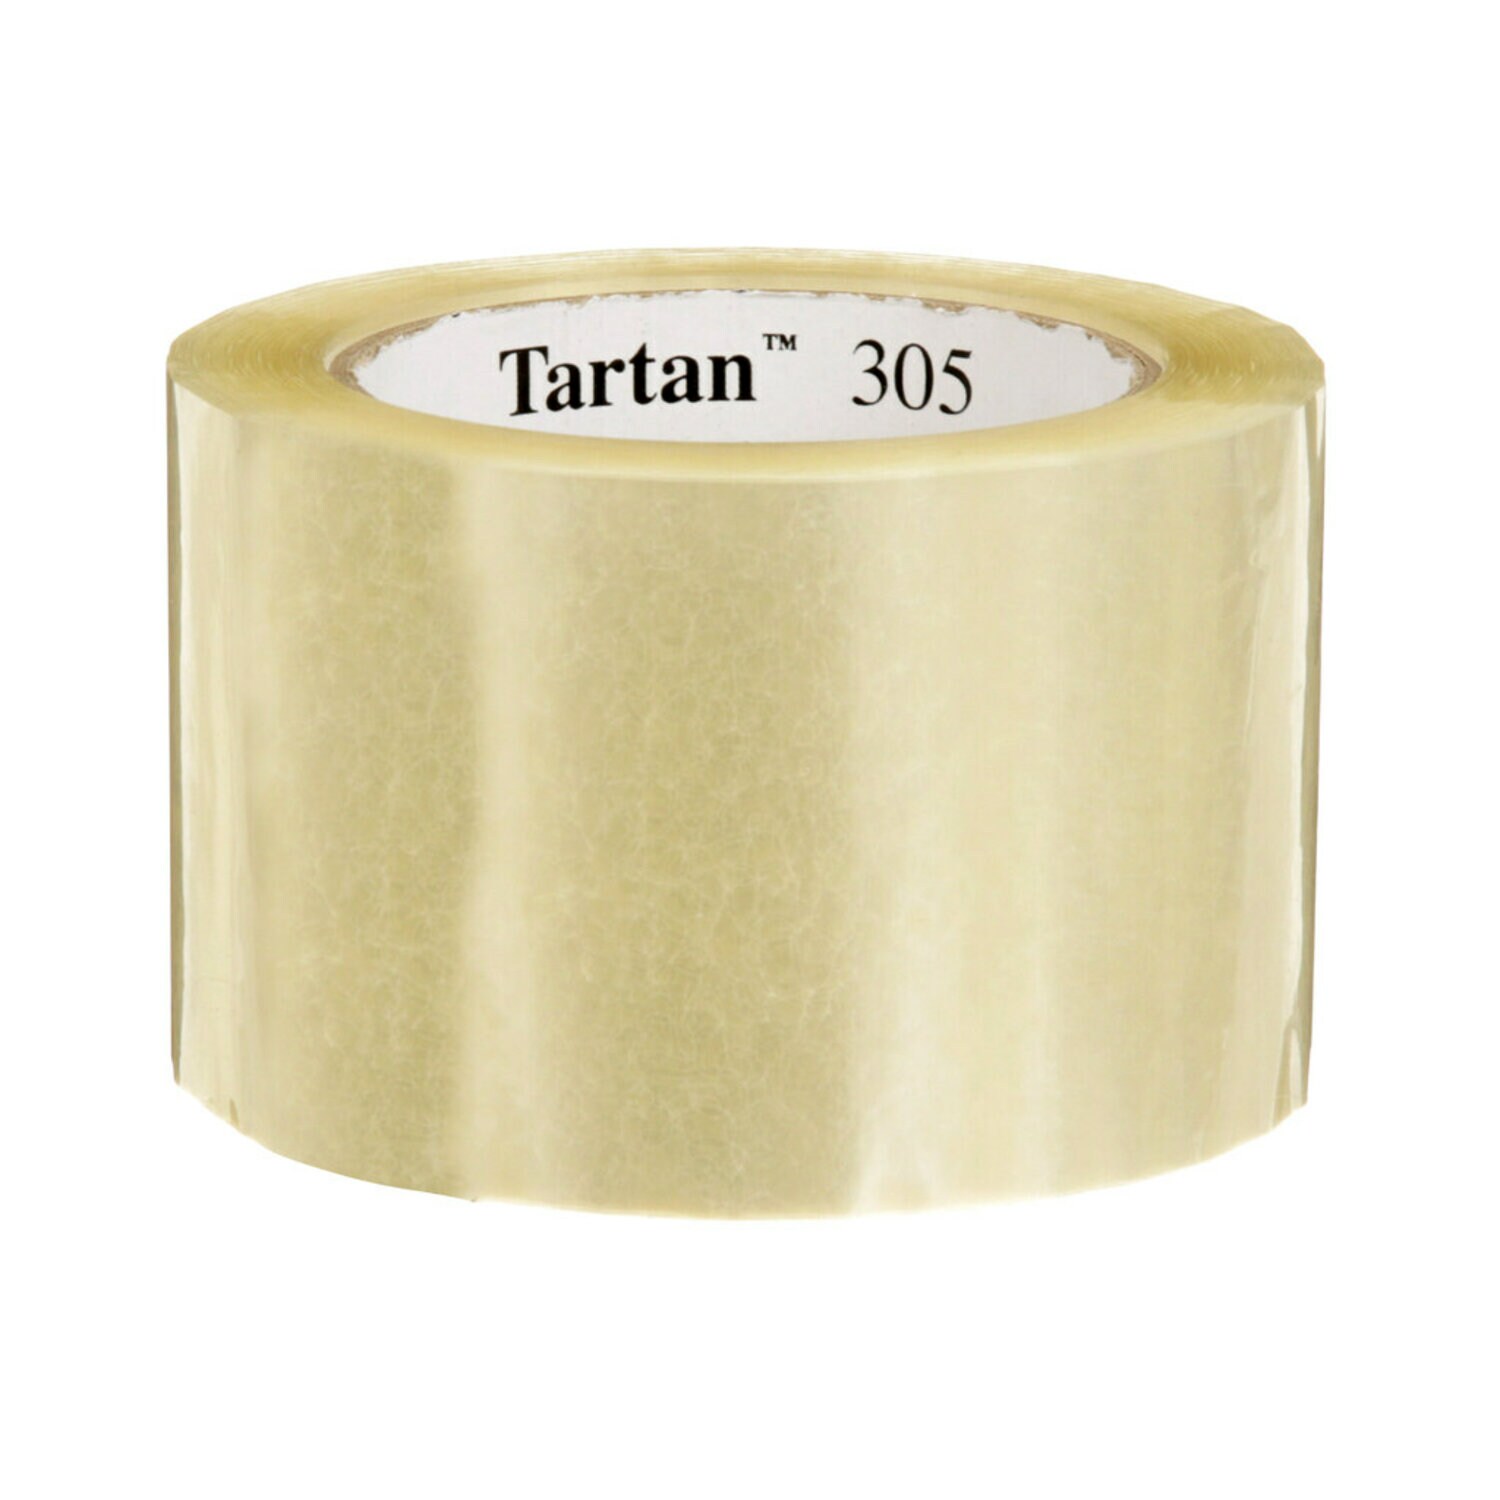 7100240710 - Tartan Box Sealing Tape 305, Clear, 72 mm x 100 m, 24 Rolls/Case